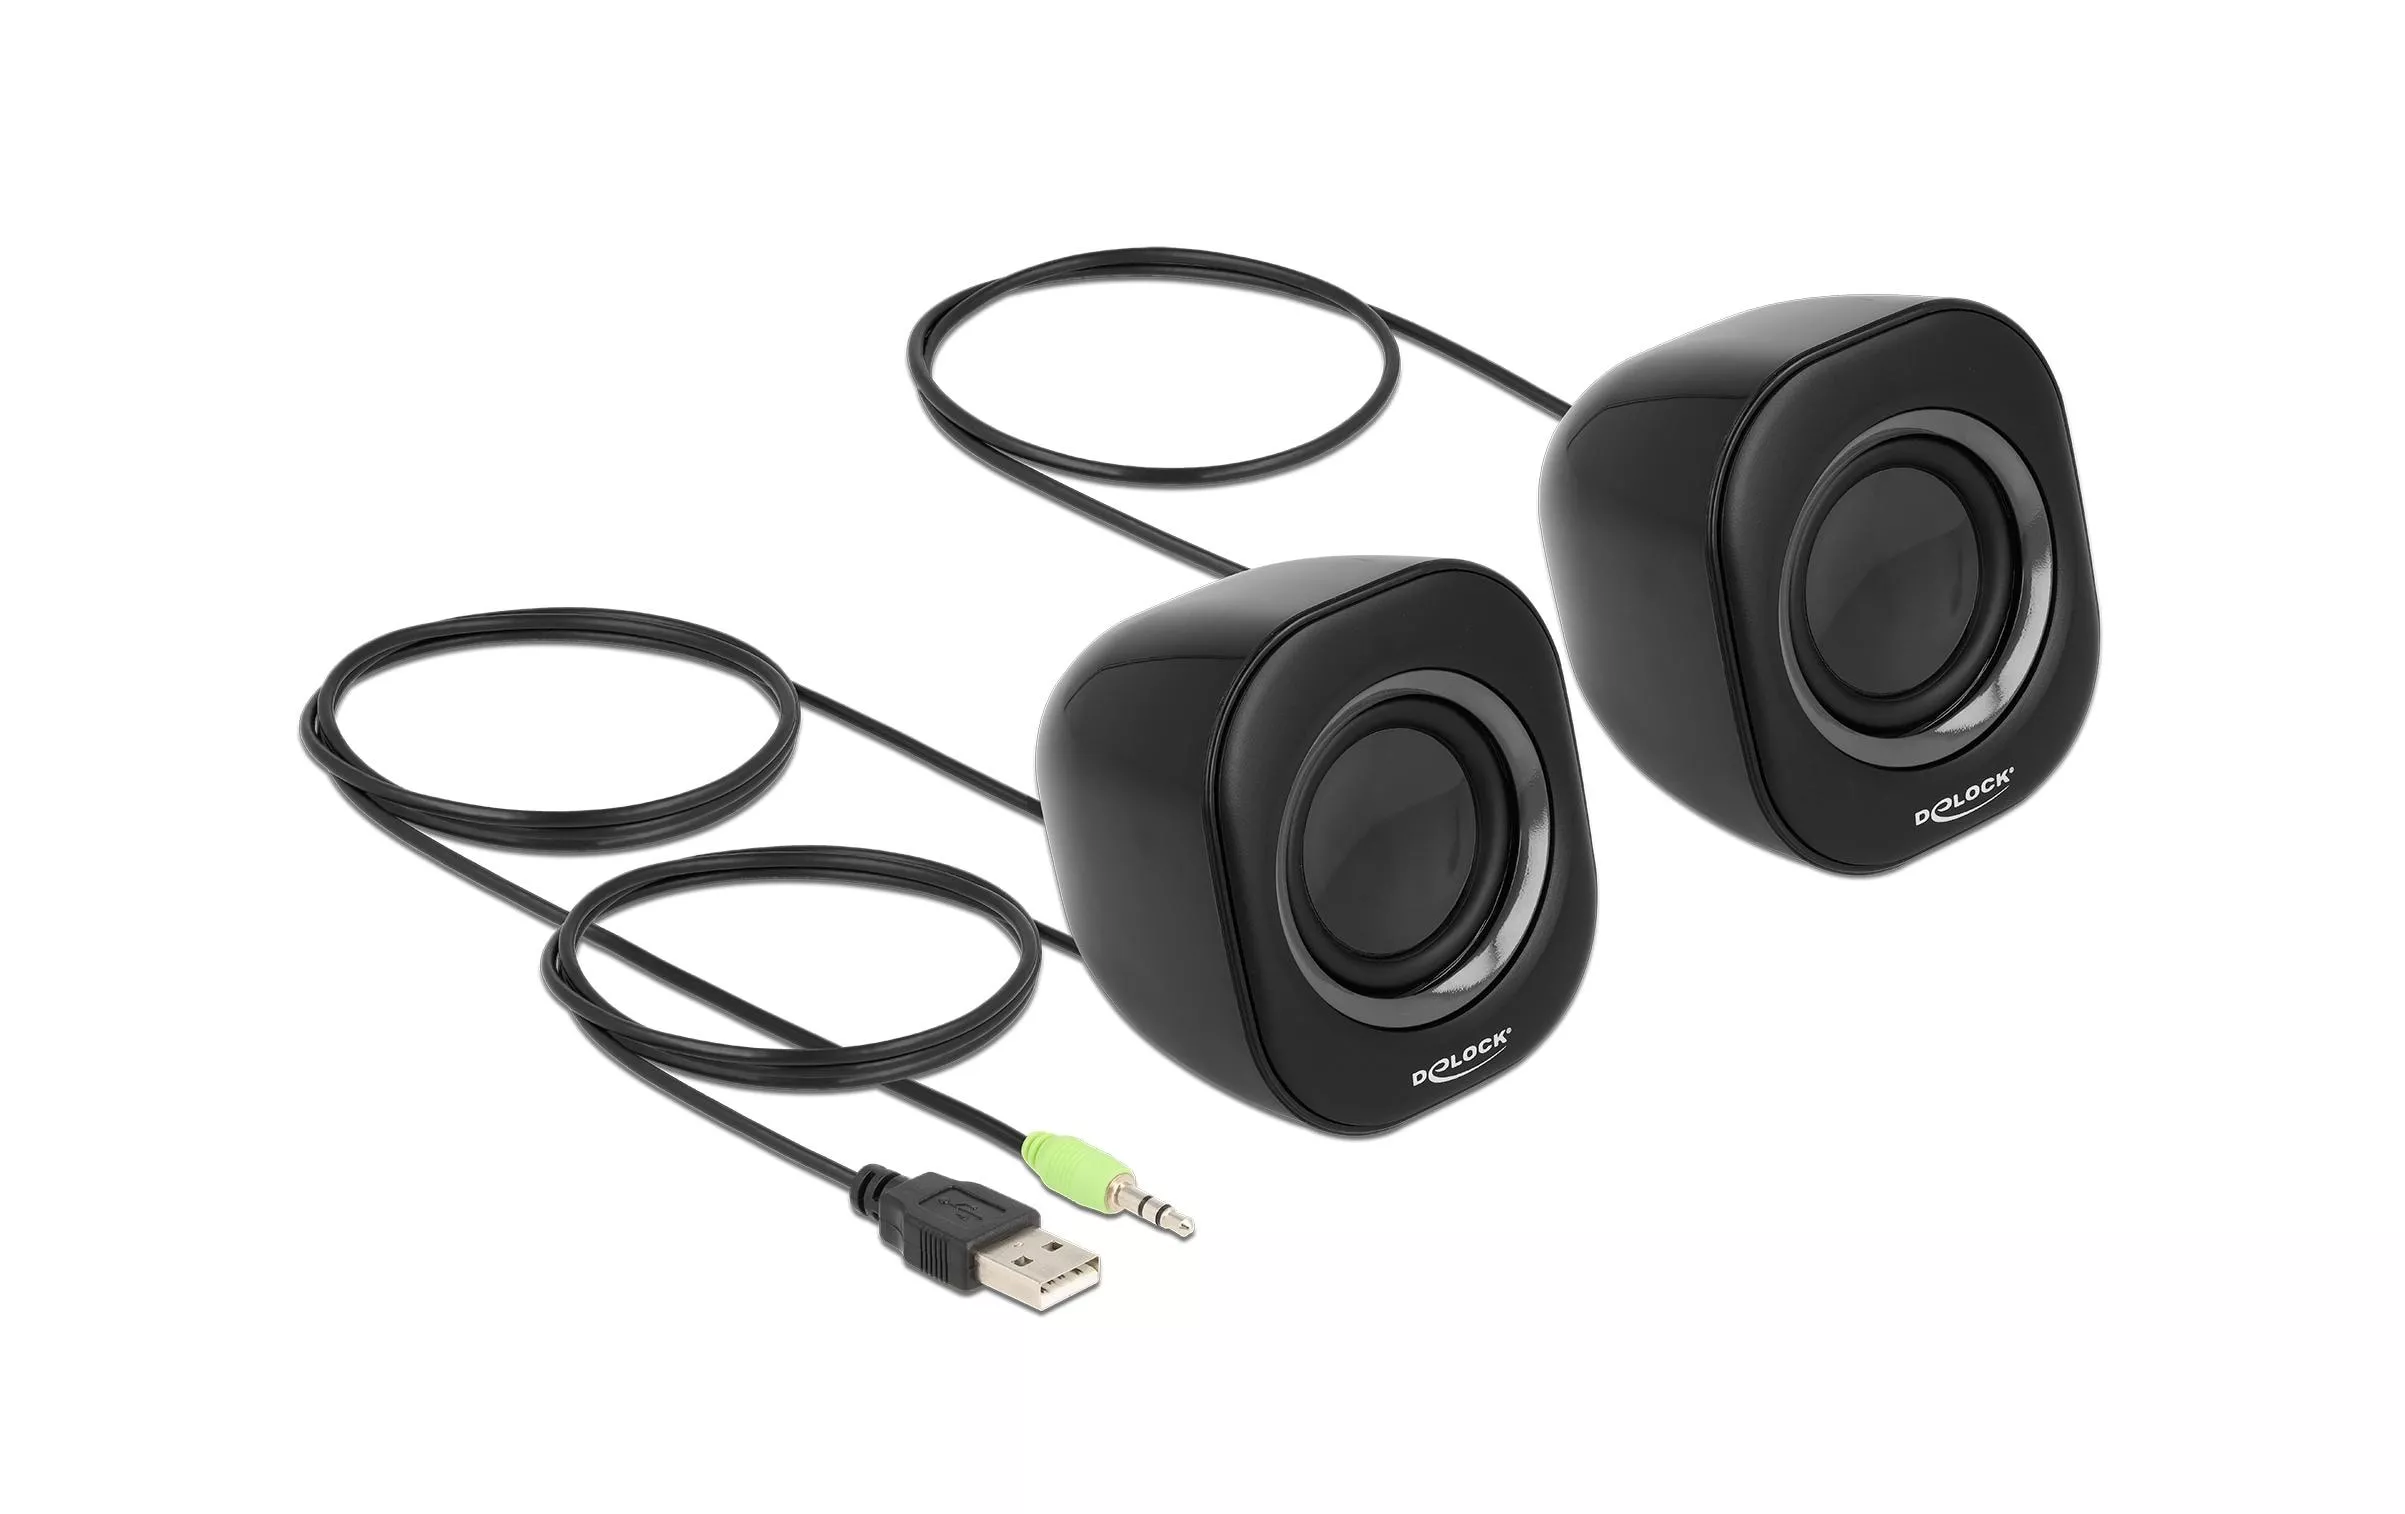 Haut-parleur - Type : Haut-parleur PC Canaux audio : 2.0 Entrée : Jack 3,5  mm mâle Alimentation : USB Puissance RMS : 2x3 W